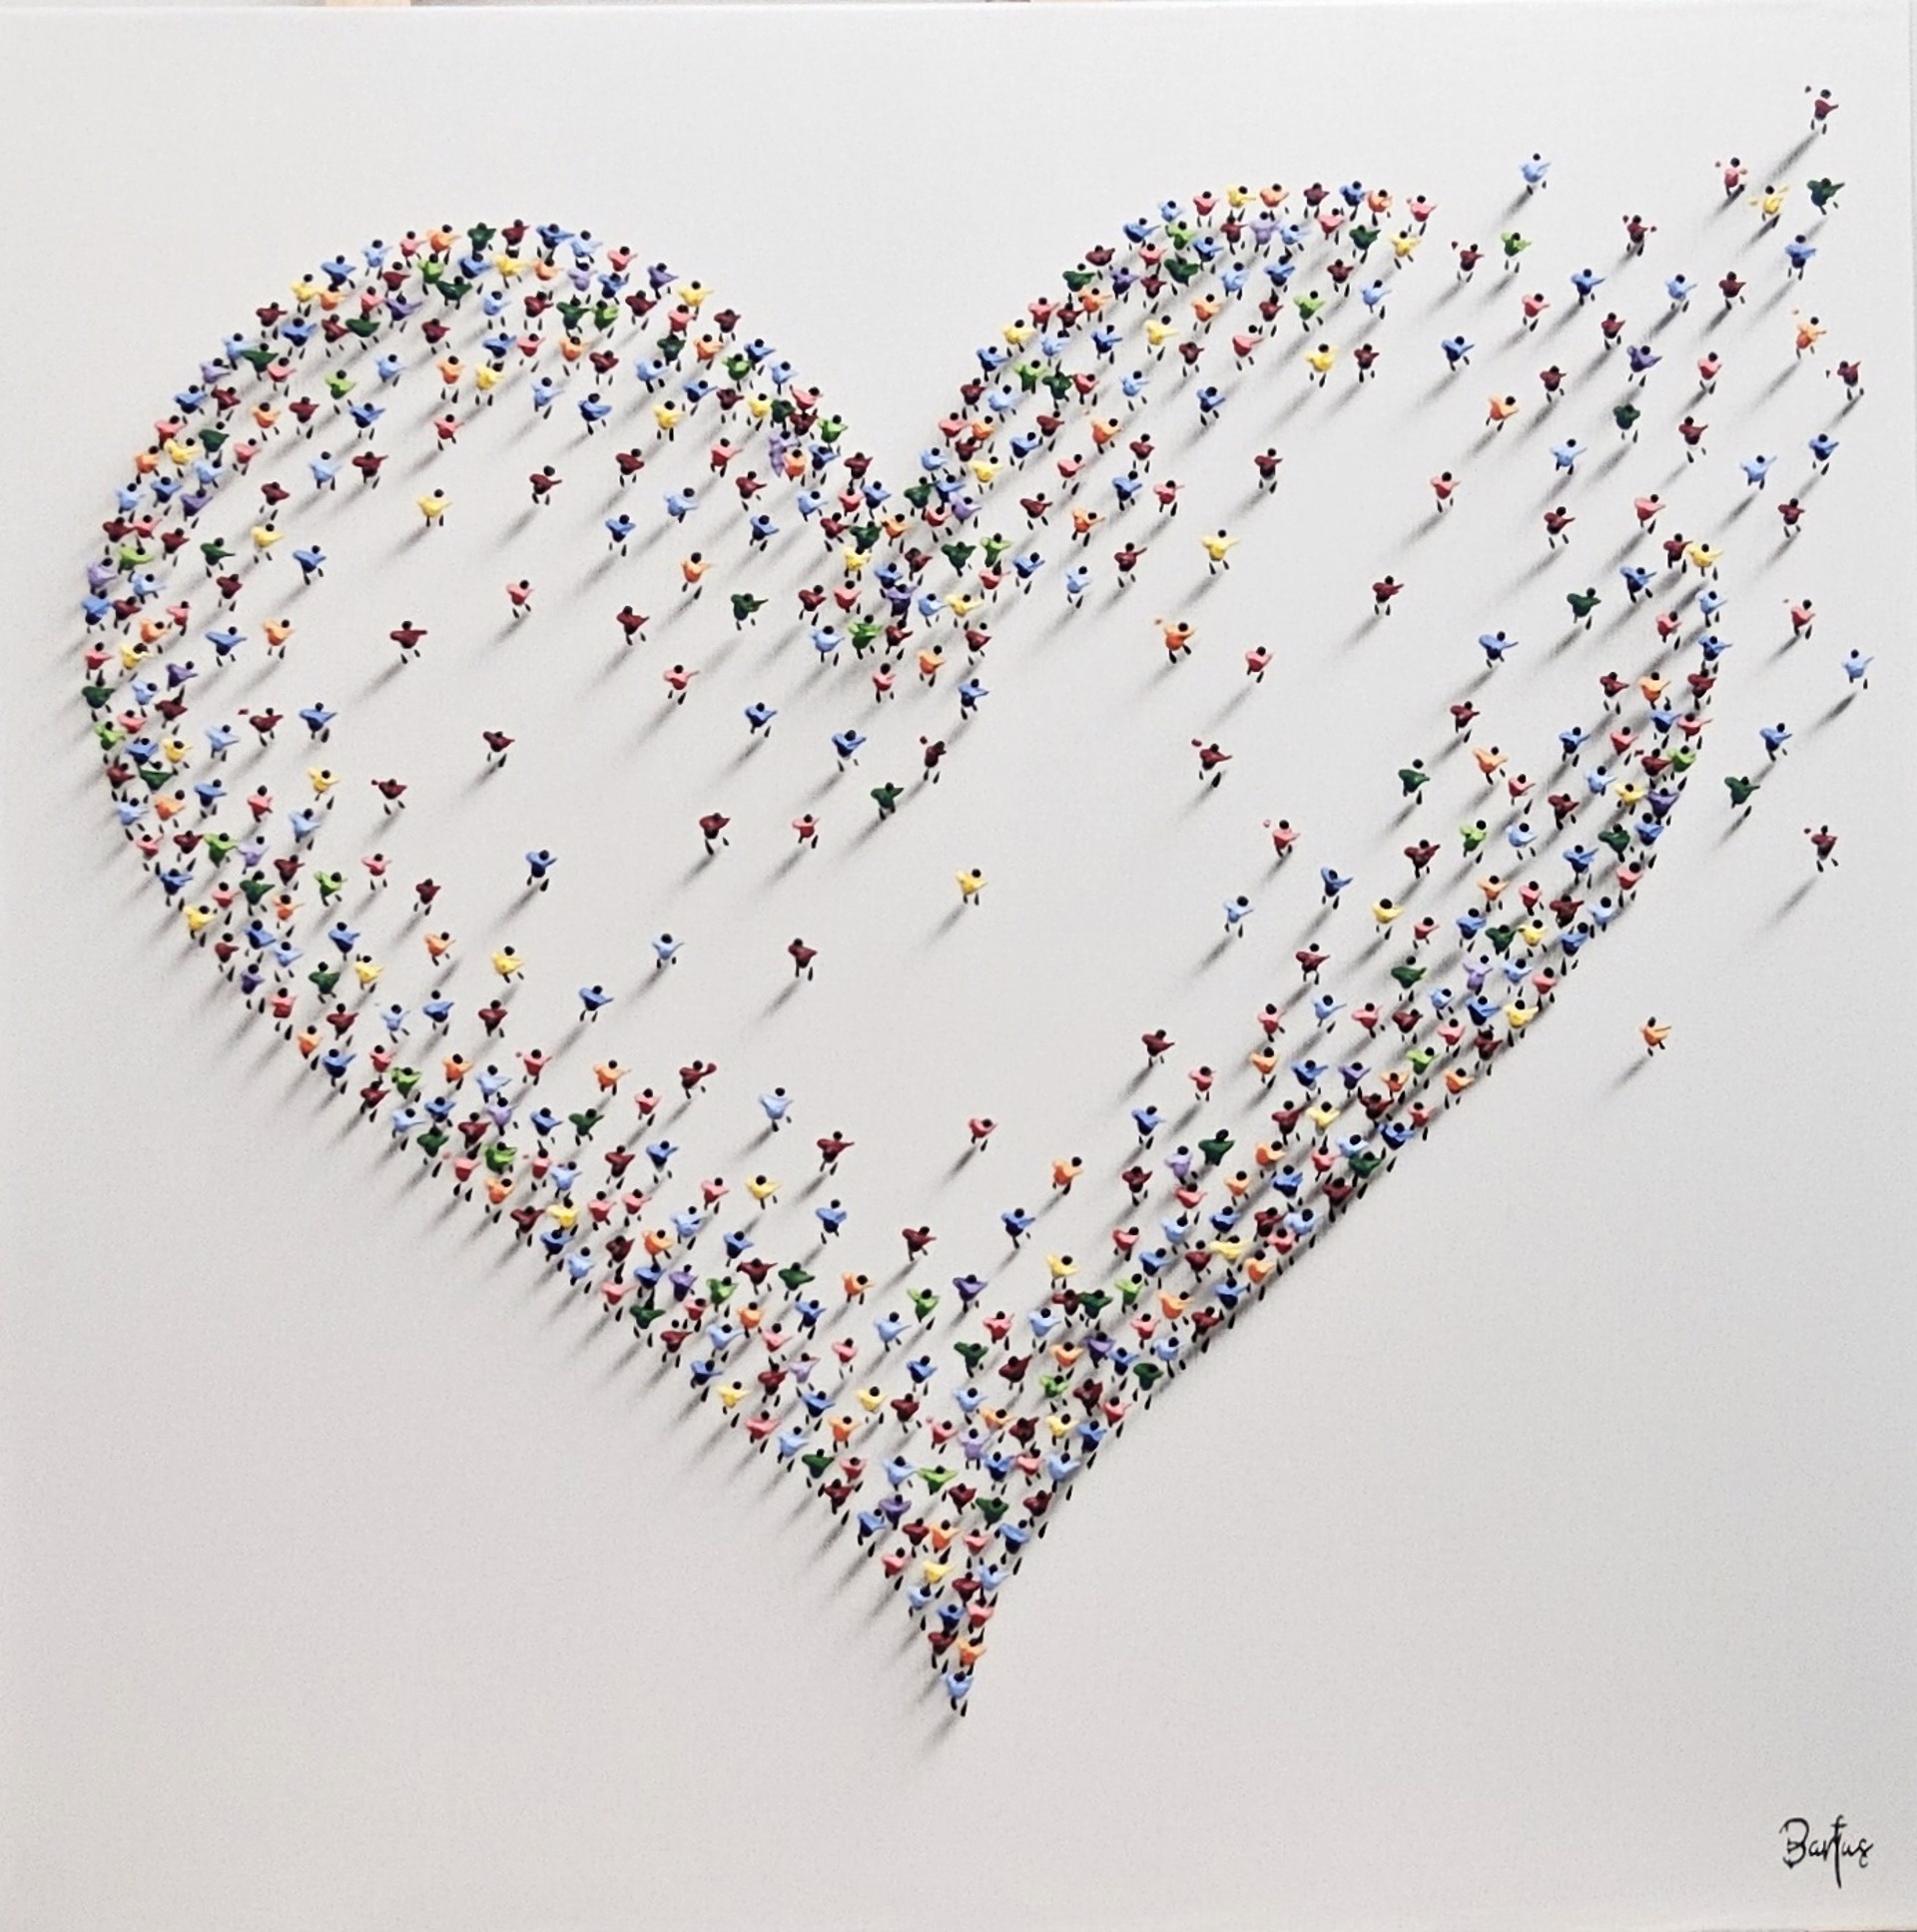 Heart by Francisco Bartus